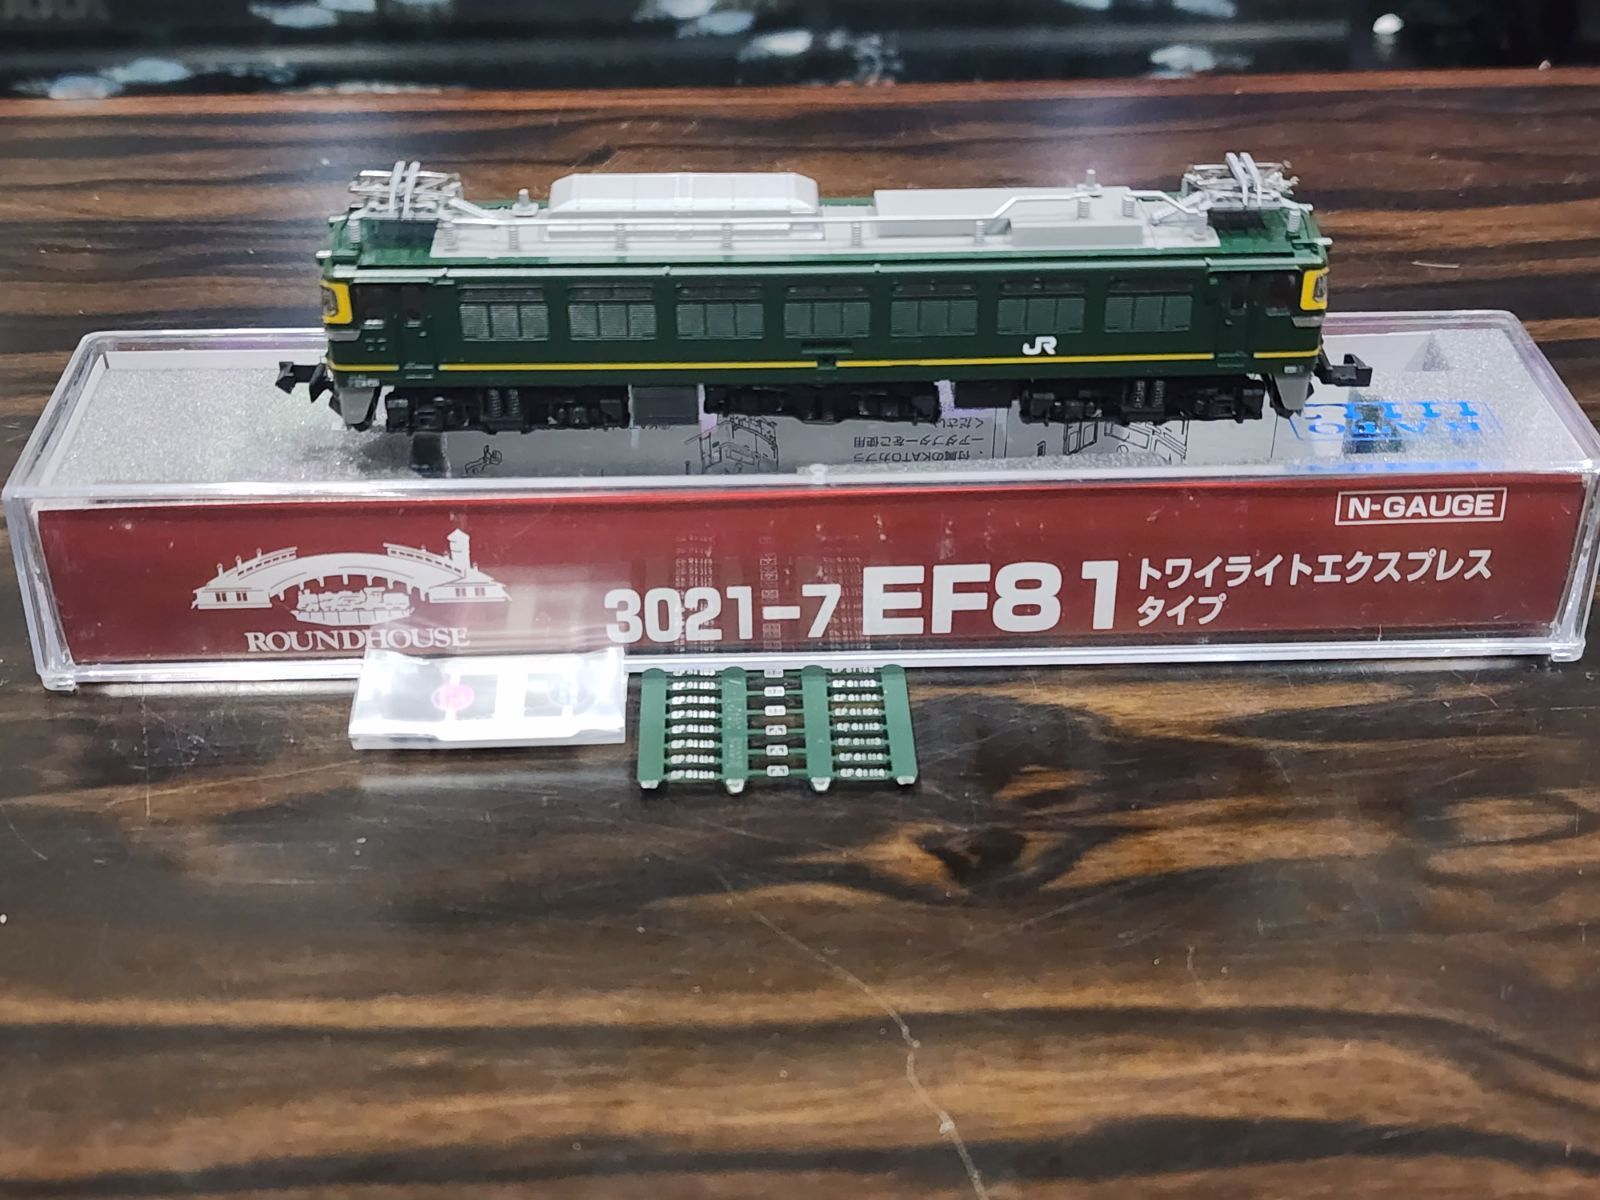 感謝価格】 3021−7 EF 81 トワイライトエクスプレスタイプ 鉄道模型 